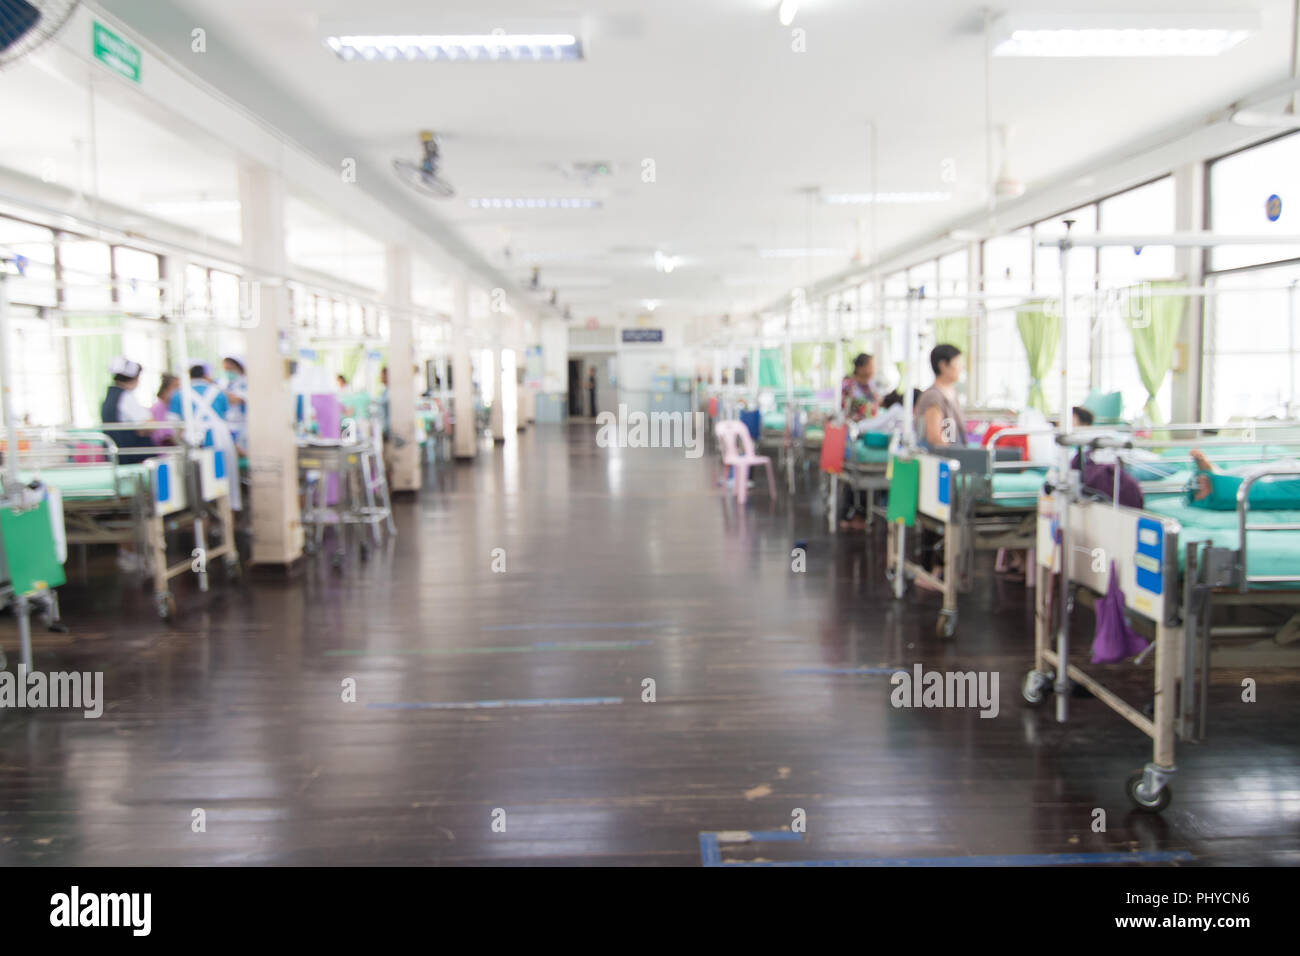 Patient admis de trouble et les soins infirmiers à l'hôpital, la Thaïlande. Concept de la santé. Banque D'Images